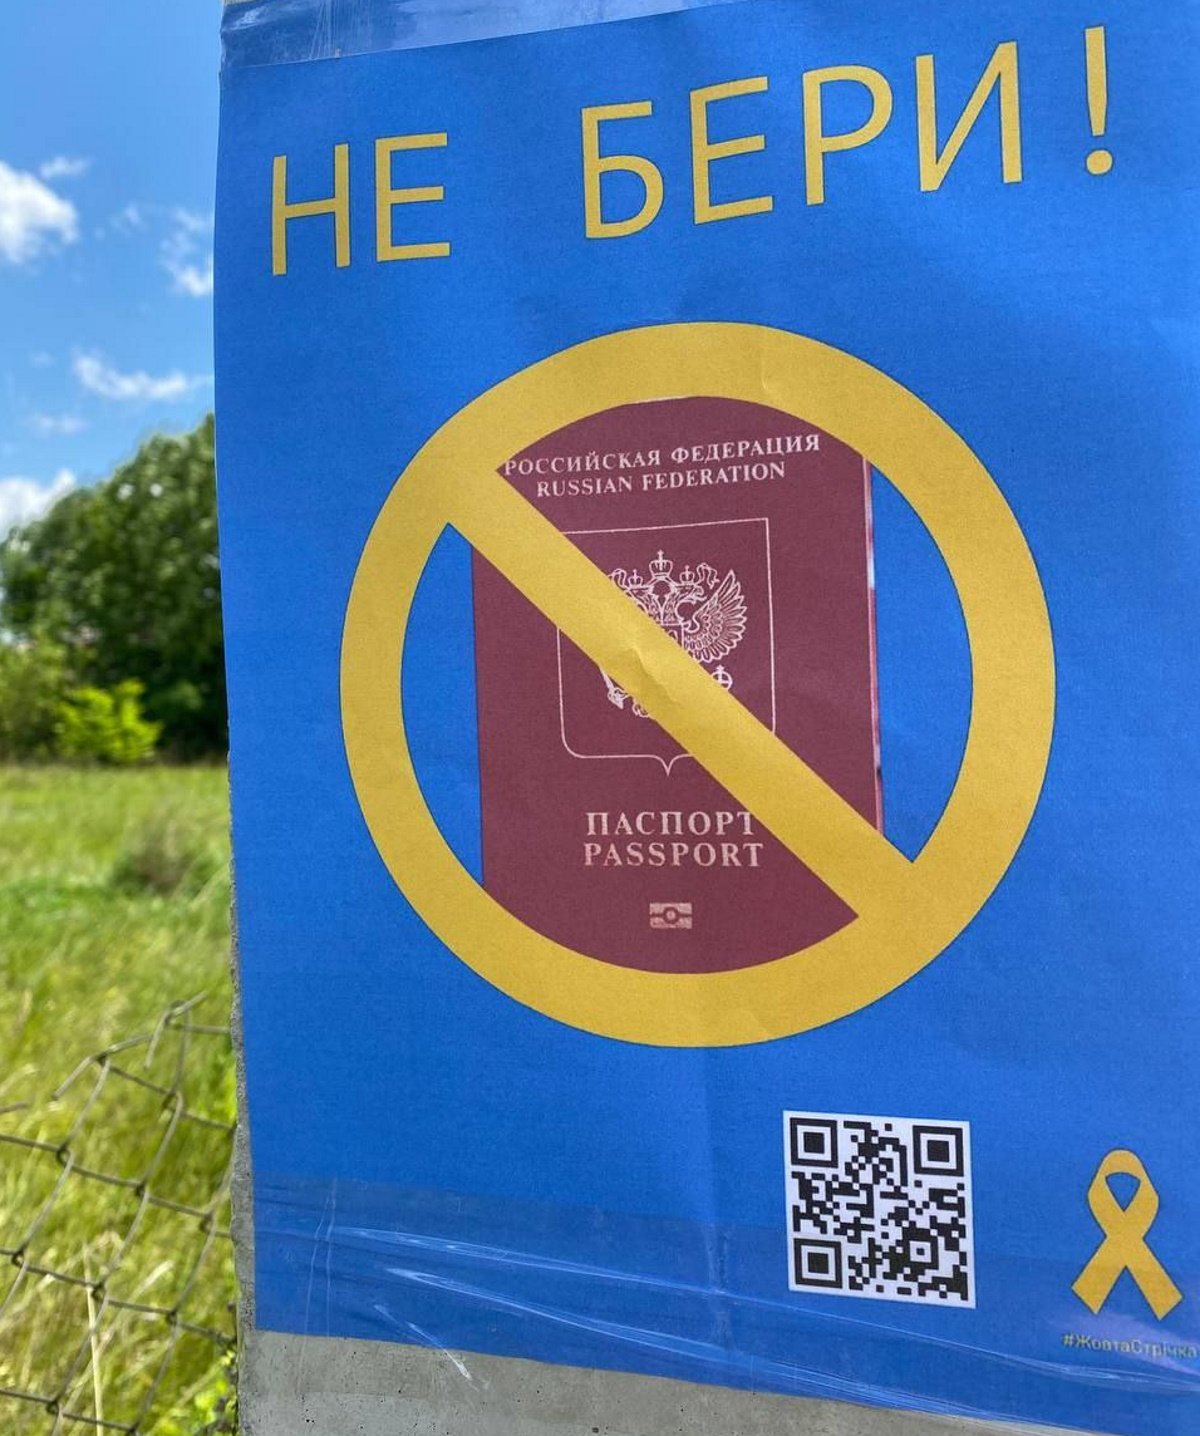 La resistència ucraïnesa de Kherson utilitza el llaç groc com a símbol contra l'ocupació russa